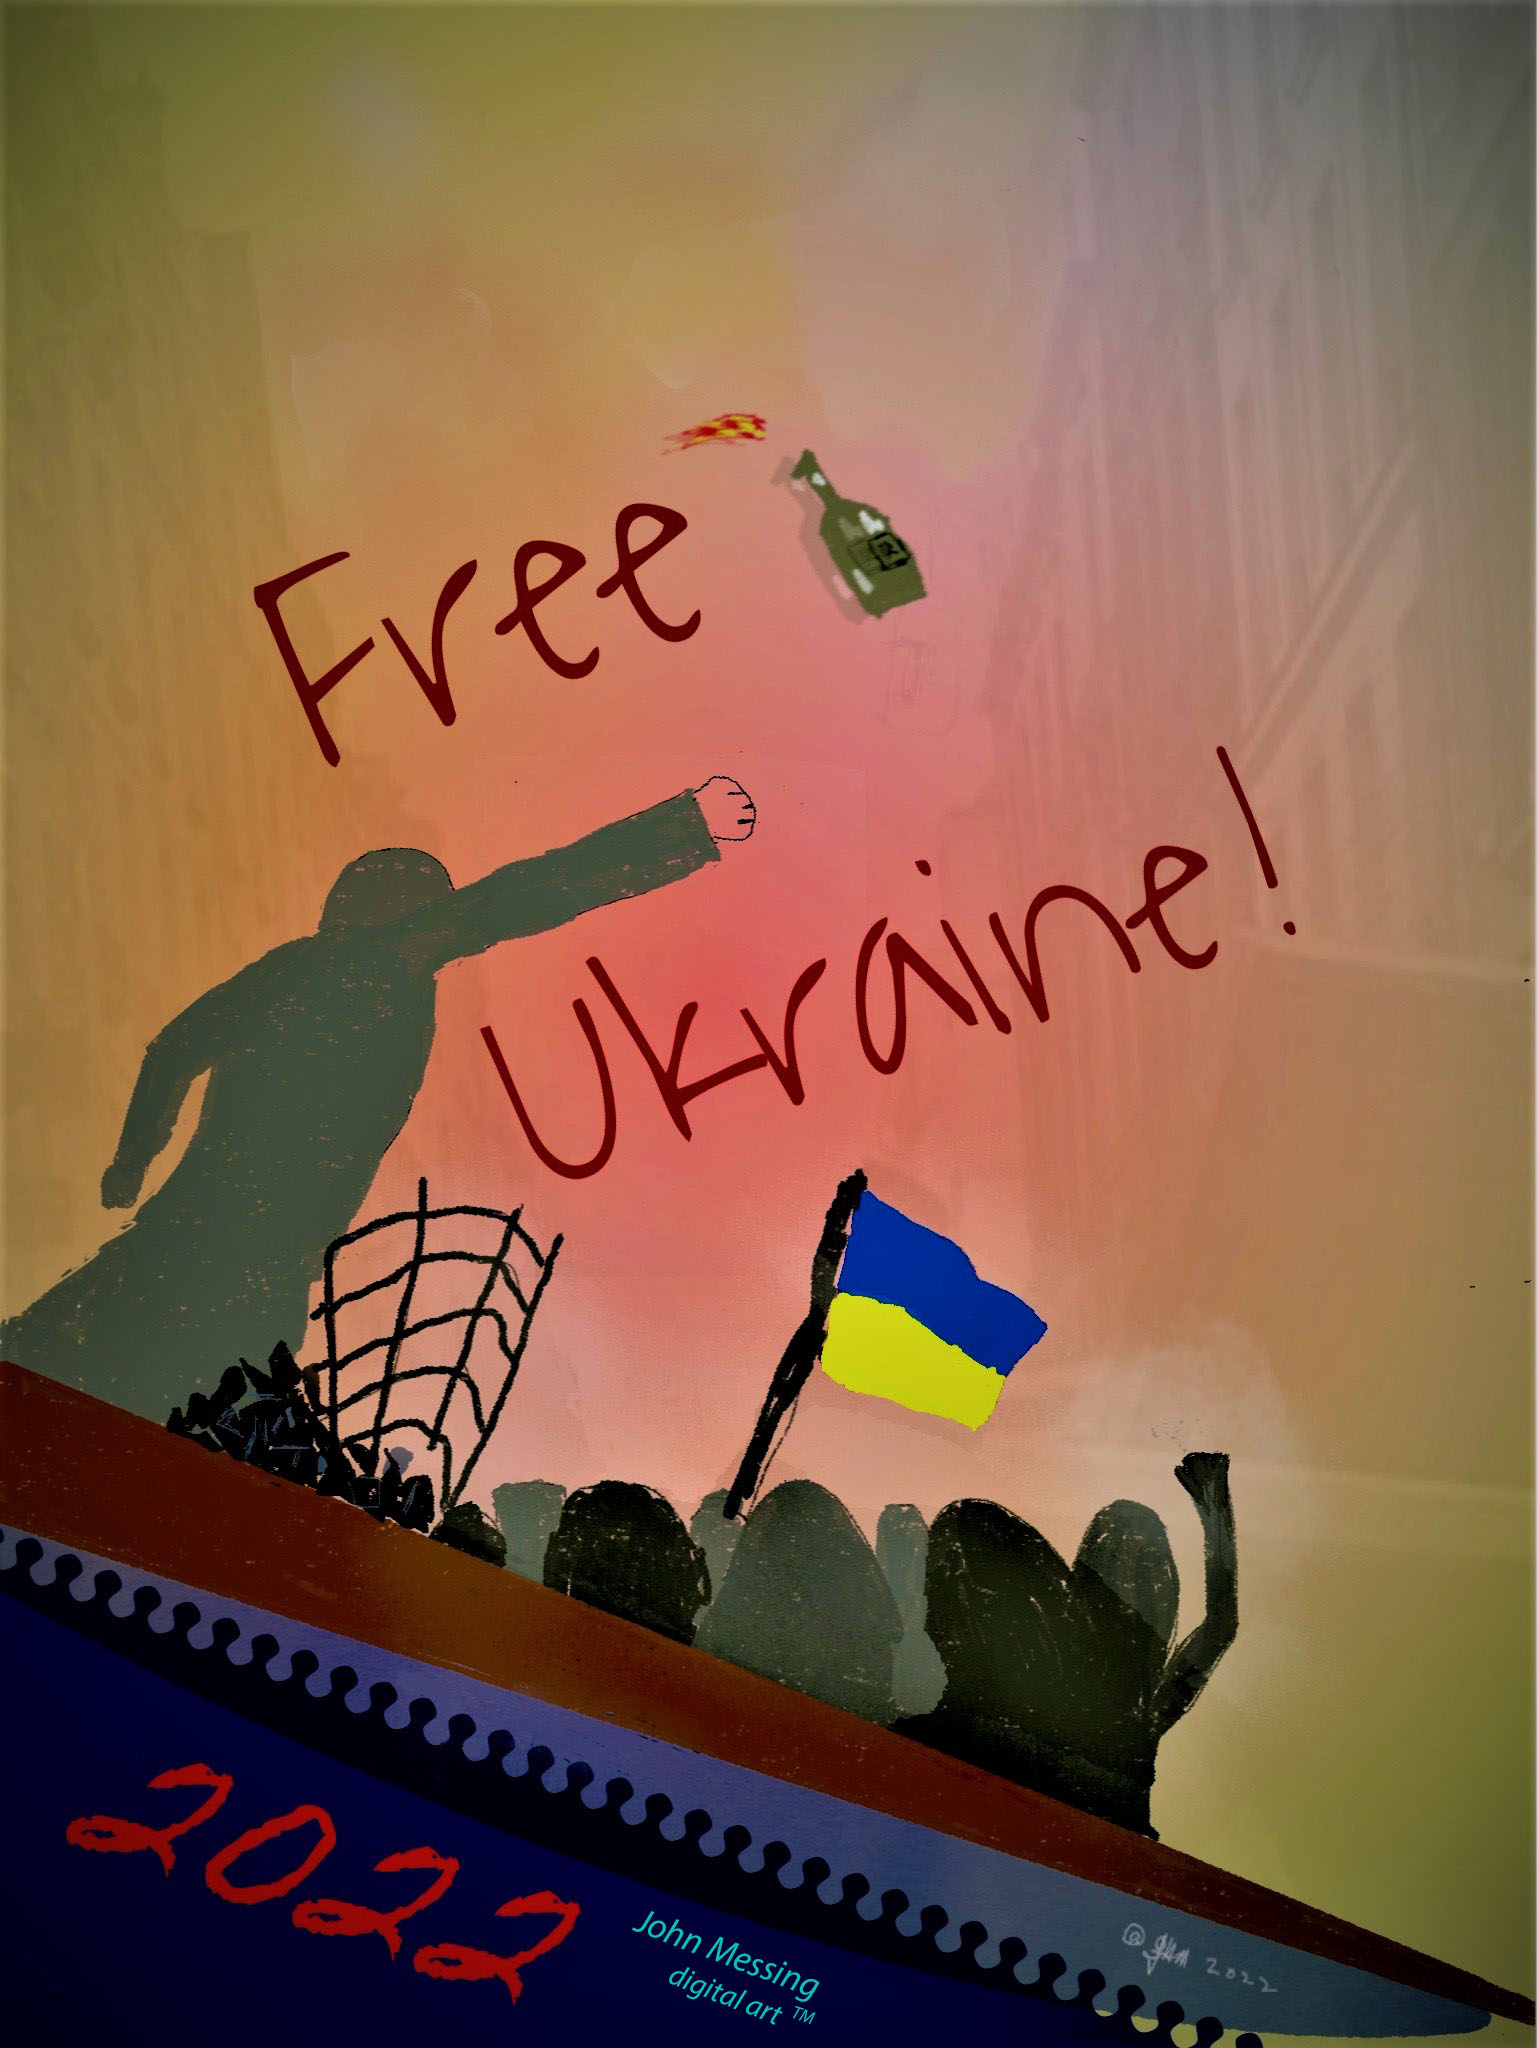 FreeUkraine!